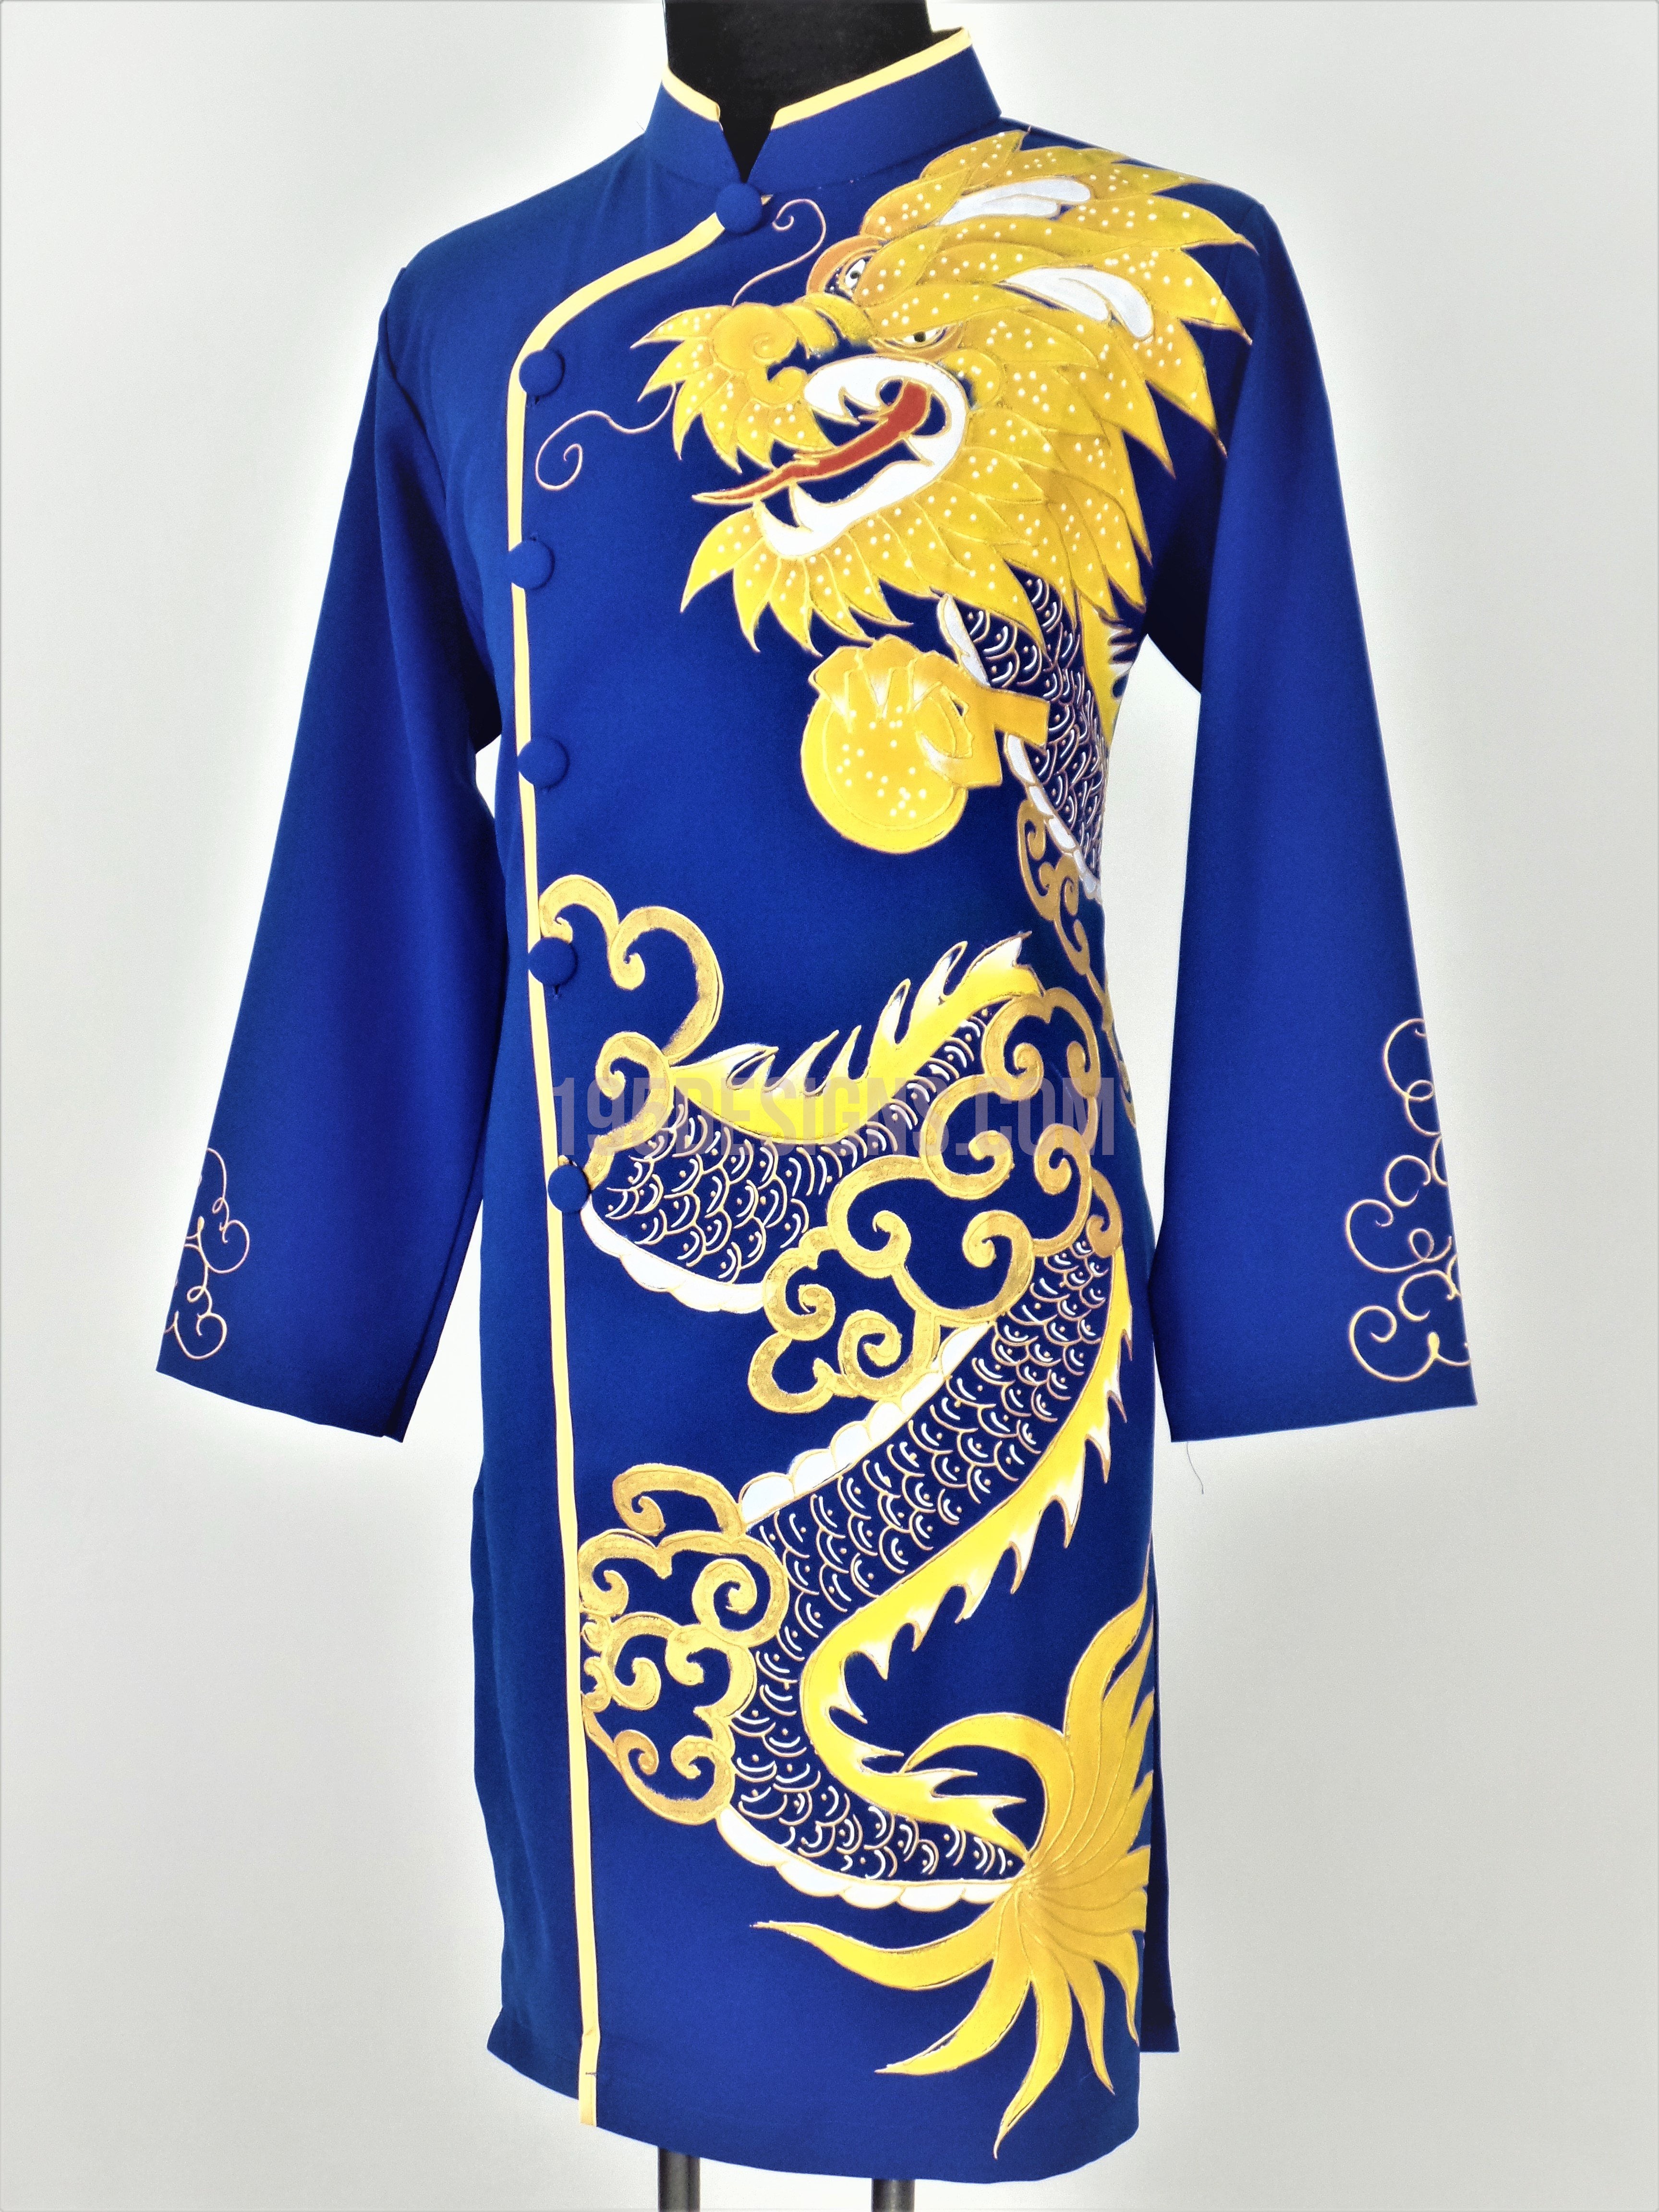 Áo dài nam màu xanh cùng hình ảnh rồng tuyệt đẹp sẽ khiến bạn phải ngạc nhiên và thích thú. Đối với người Việt, áo dài luôn là một truyền thống quý giá, kết hợp với hình ảnh rồng thì hoàn hảo không thể chê vào đâu được. Hãy không bỏ lỡ cơ hội thưởng thức tác phẩm nghệ thuật này.